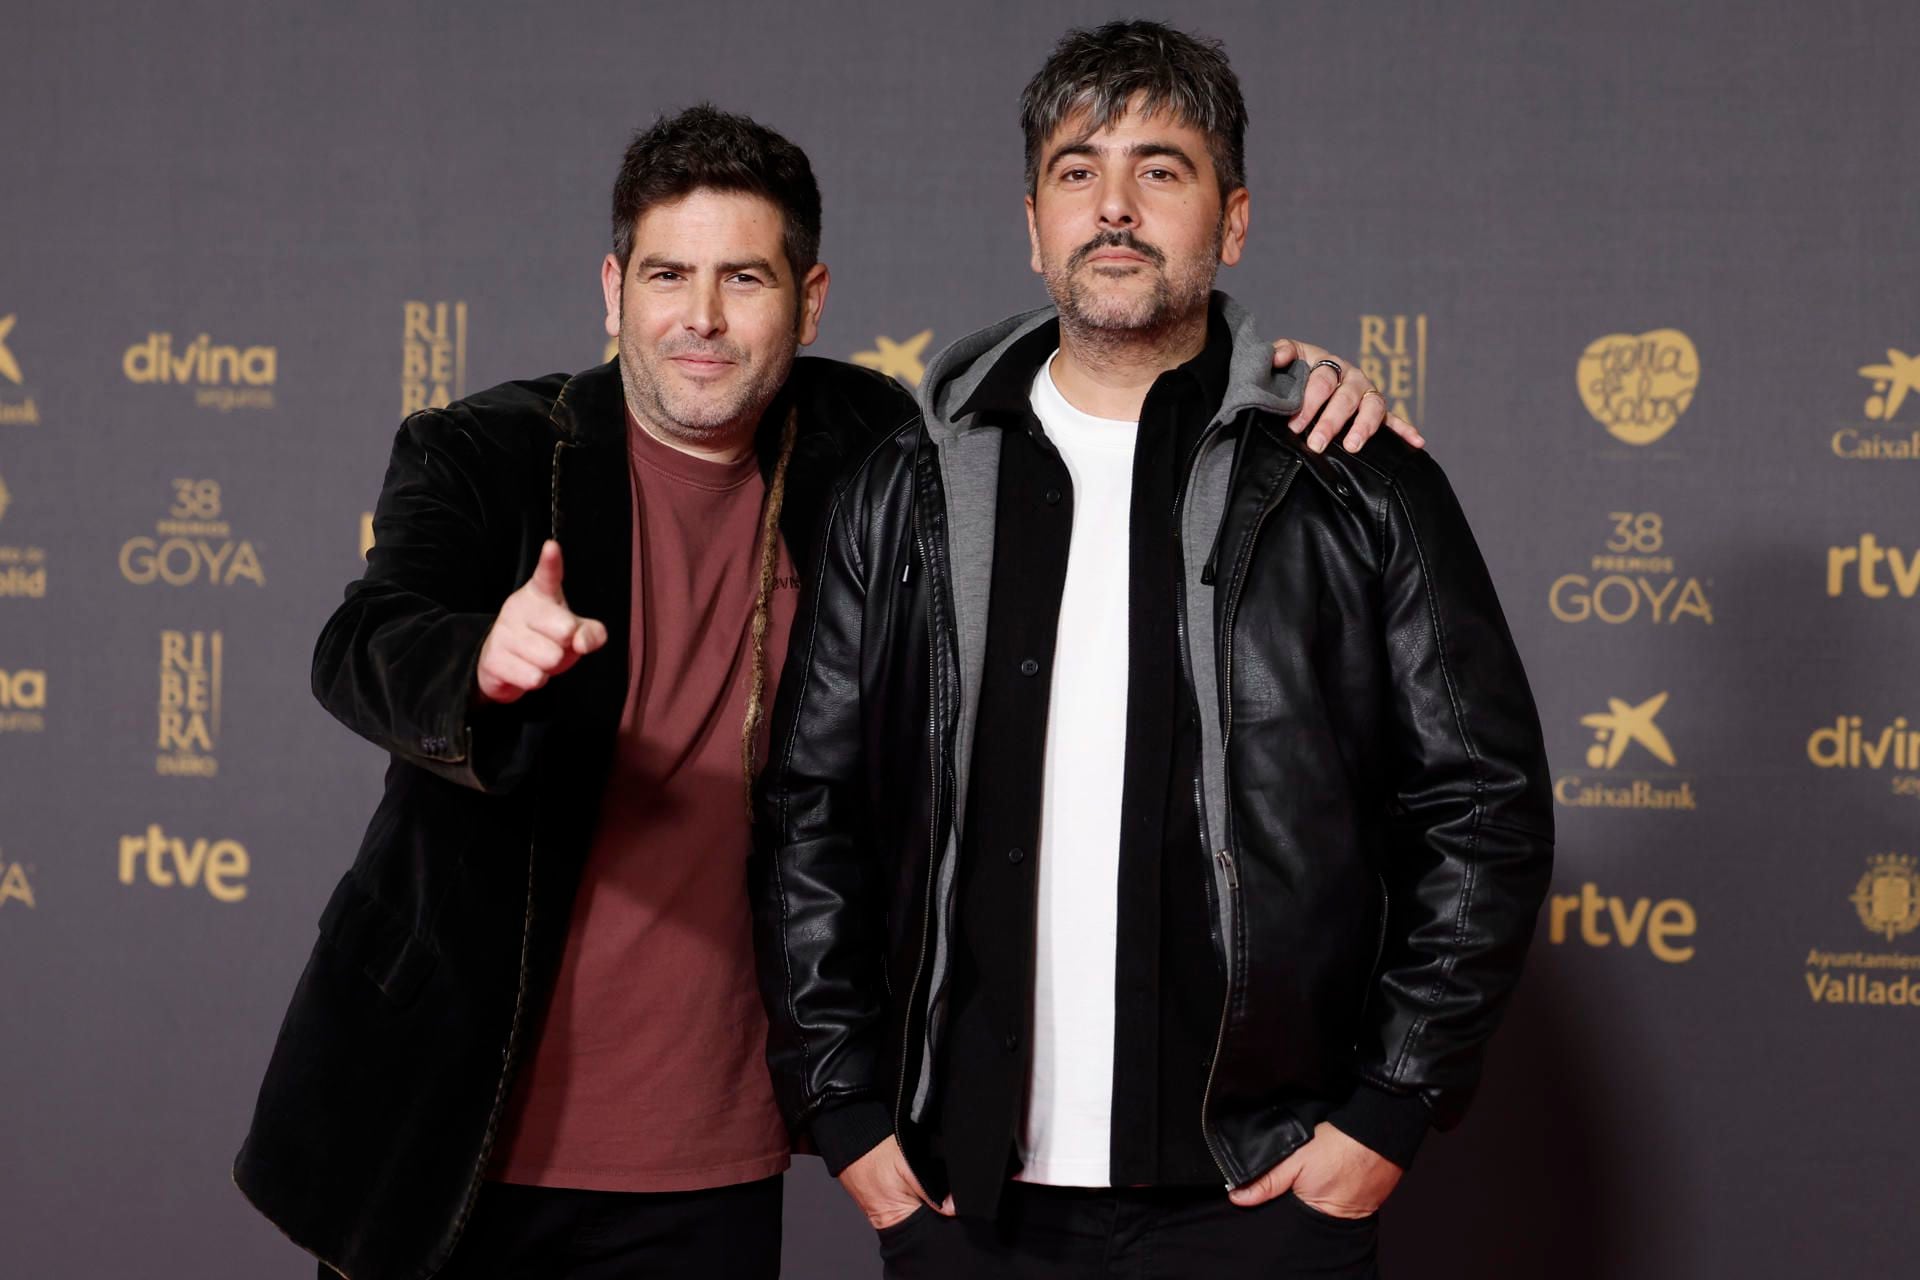 Los componentes del grupo musical "Estopa", los hermanos David Muñoz y José Muñoz posan a su llegada a la ceremonia de entrega de la 38.ª edición de los Premios Goya